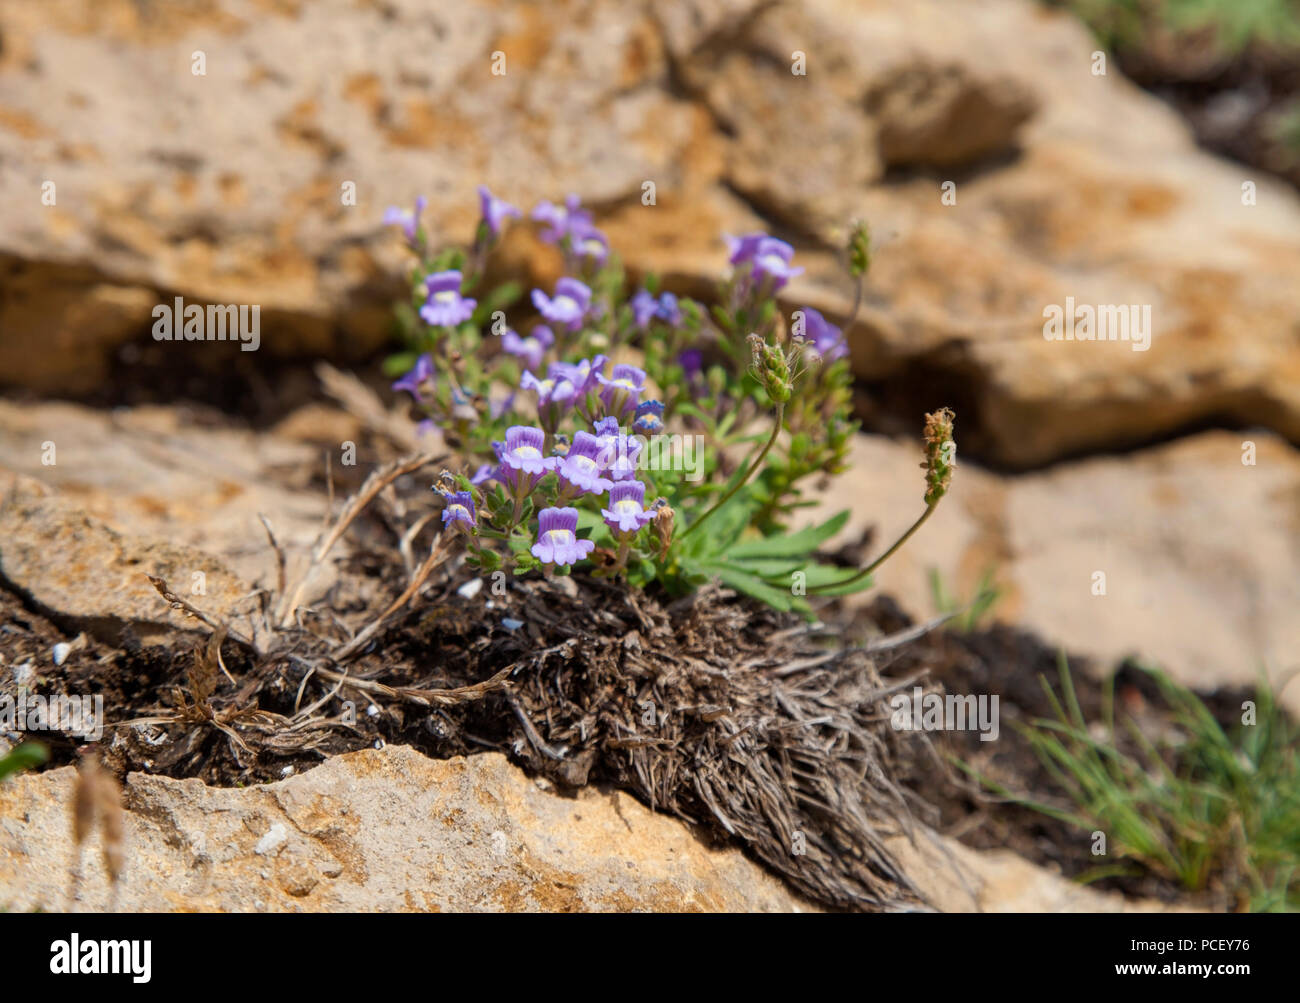 flora of Cantabria - Chaenorhinum origanifolium, fairy snapdragon Stock Photo